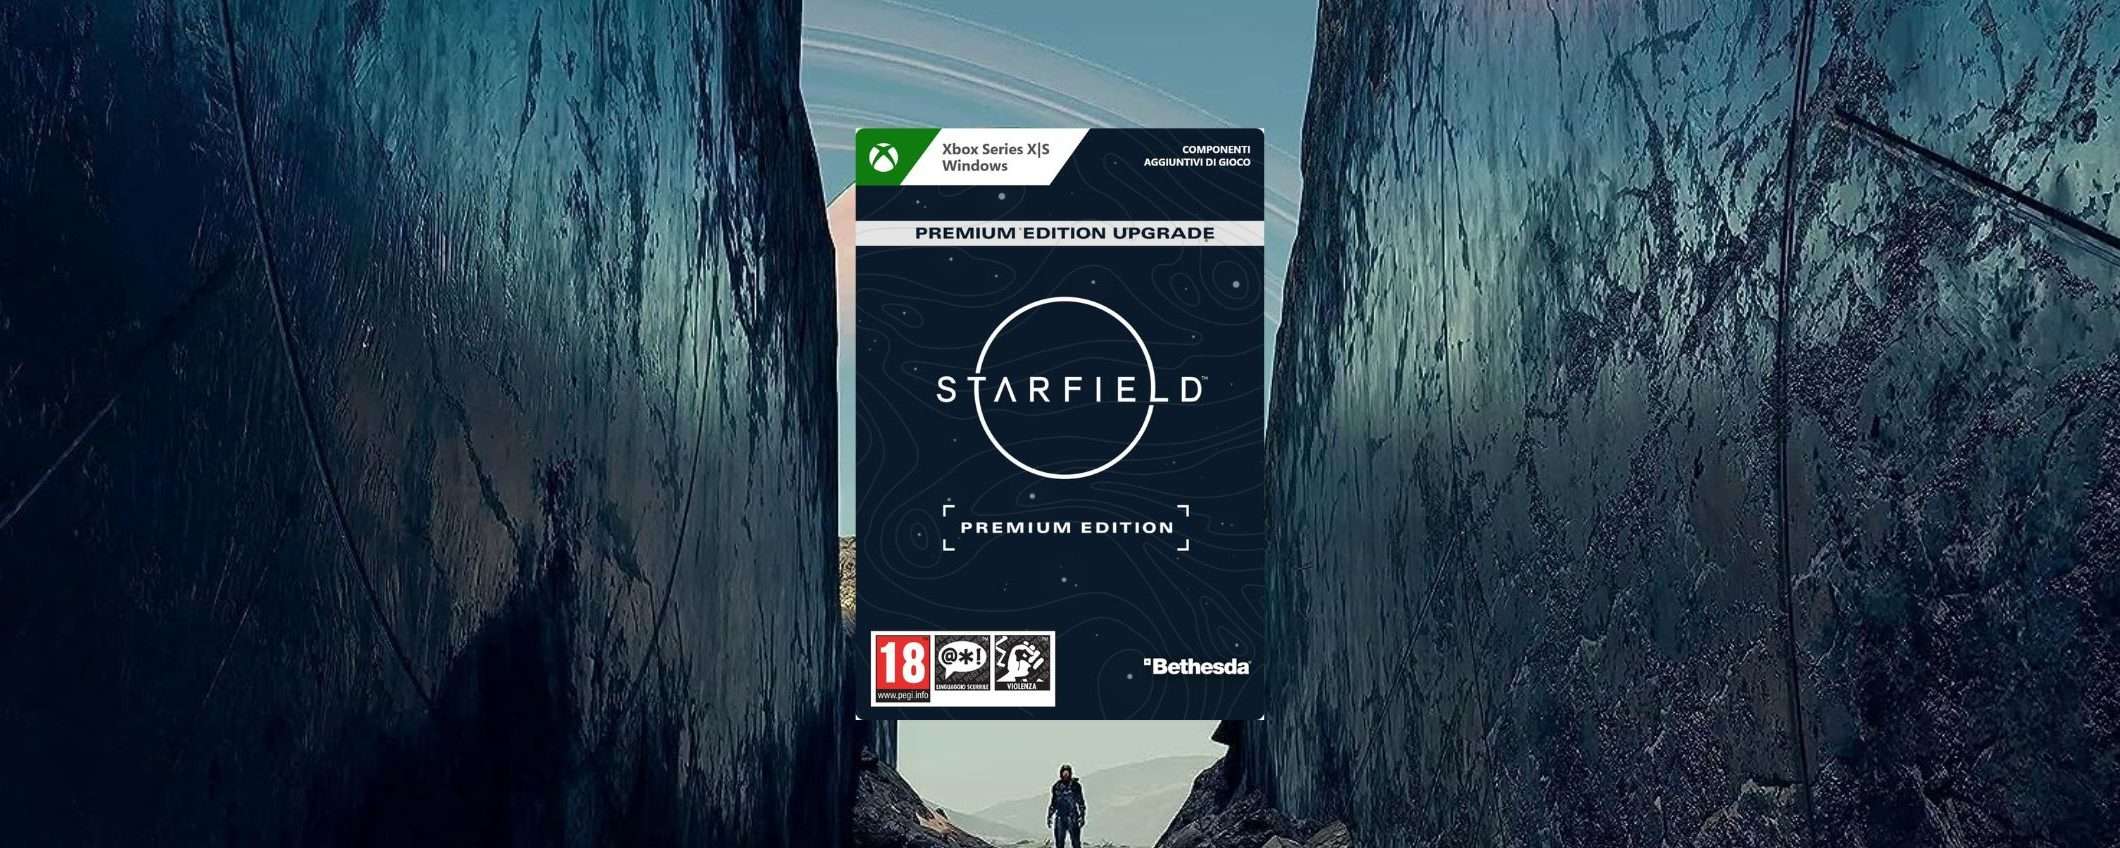 Gioca a Starfield in ANTICIPO con la Premium Edition